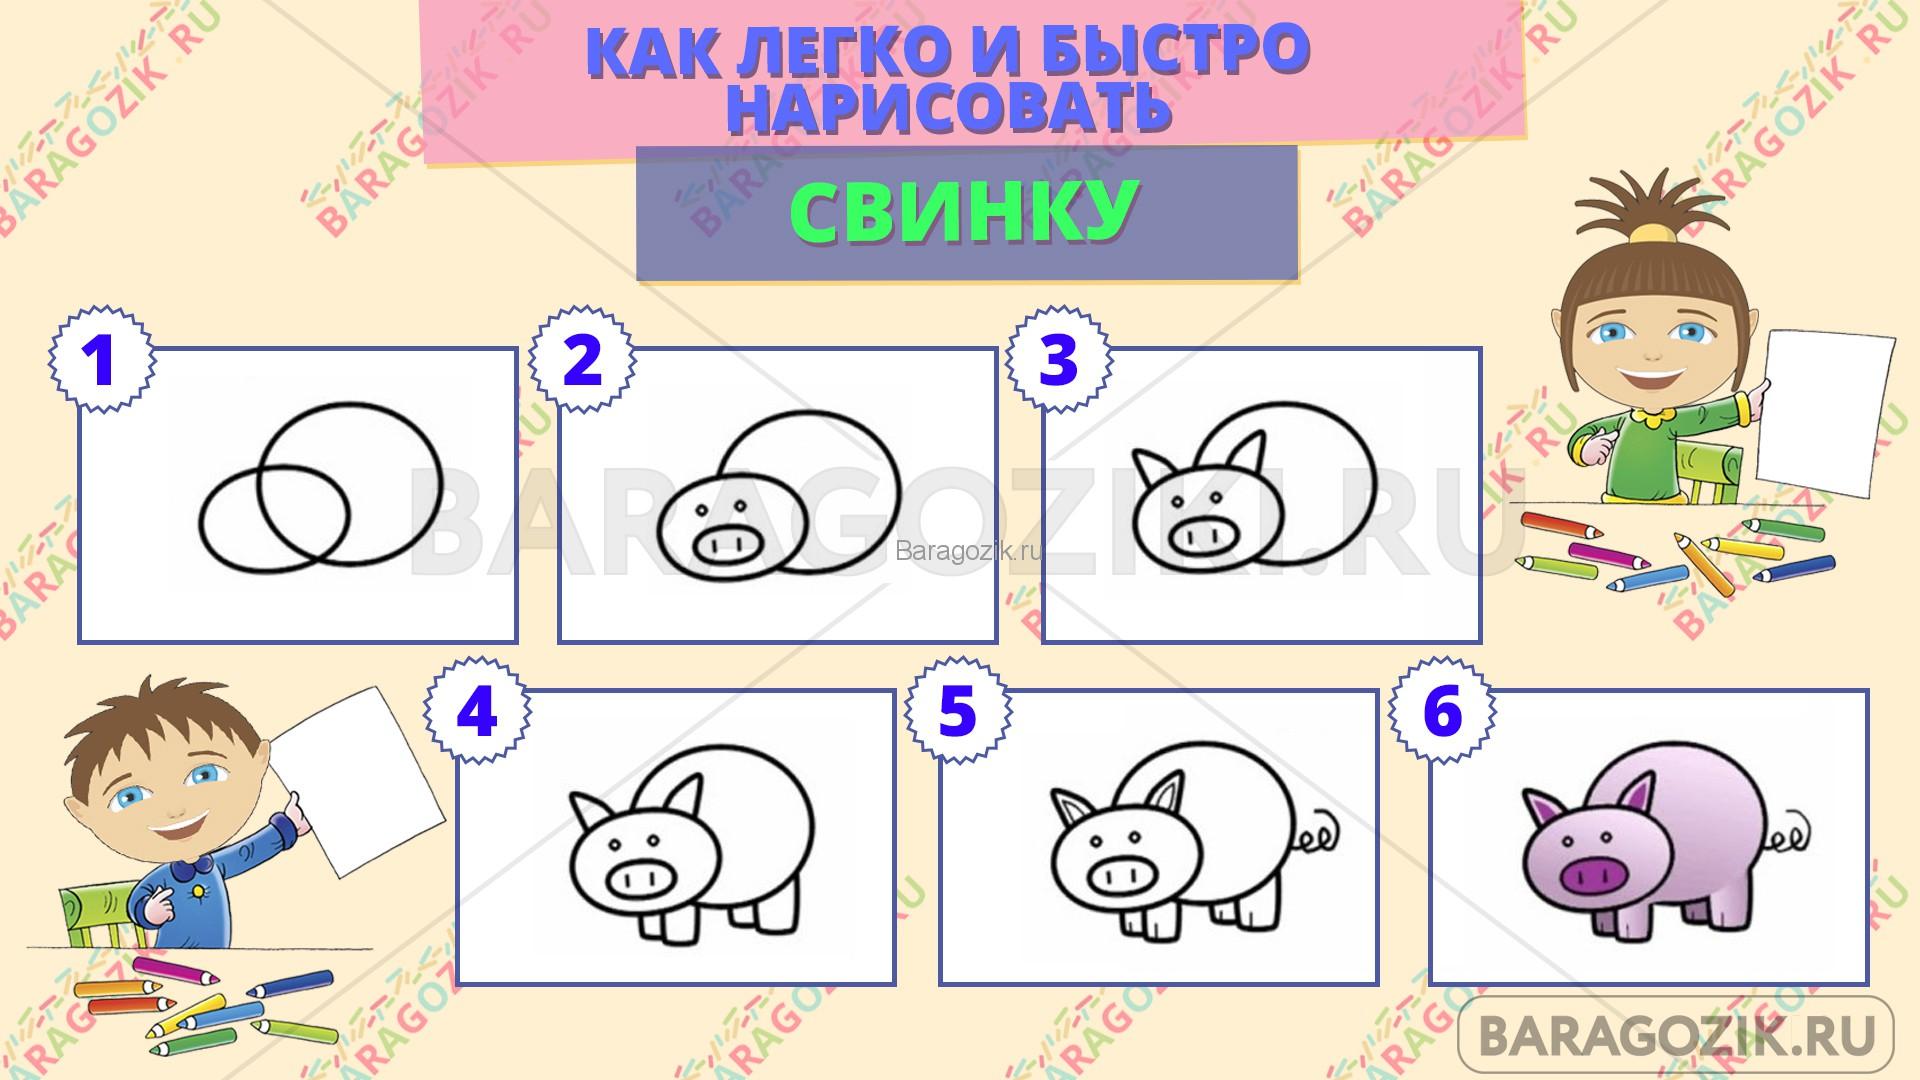 как легко нарисовать свинку - пошаговая схема